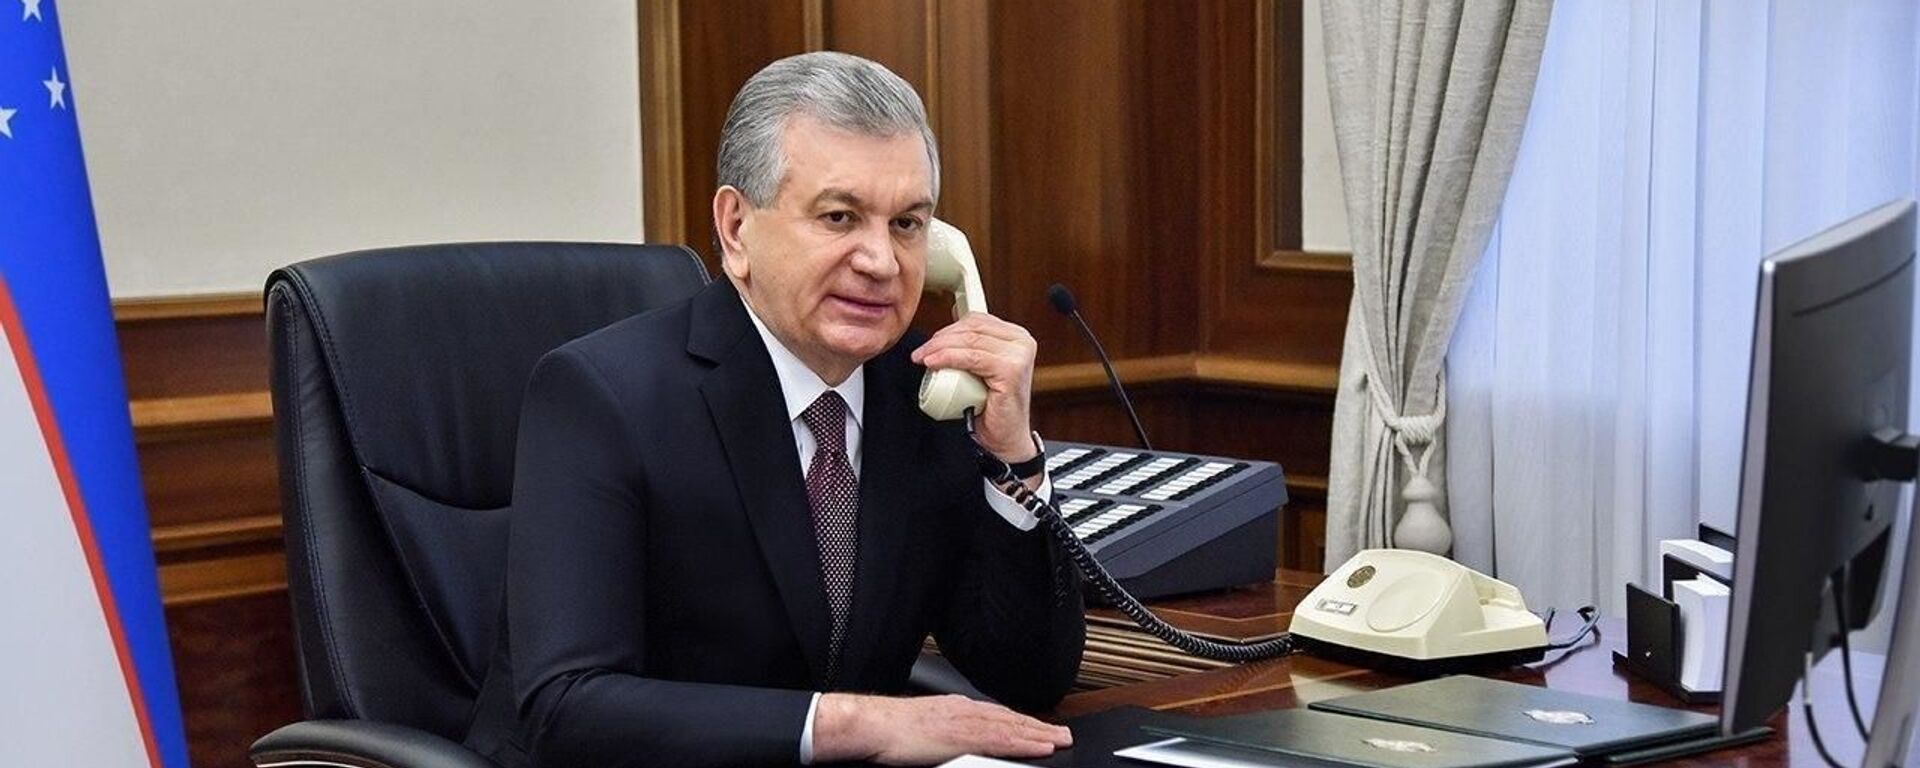 Prezident Shavkat Mirziyoyev razgovarivayet po telefonu - Sputnik O‘zbekiston, 1920, 31.08.2021